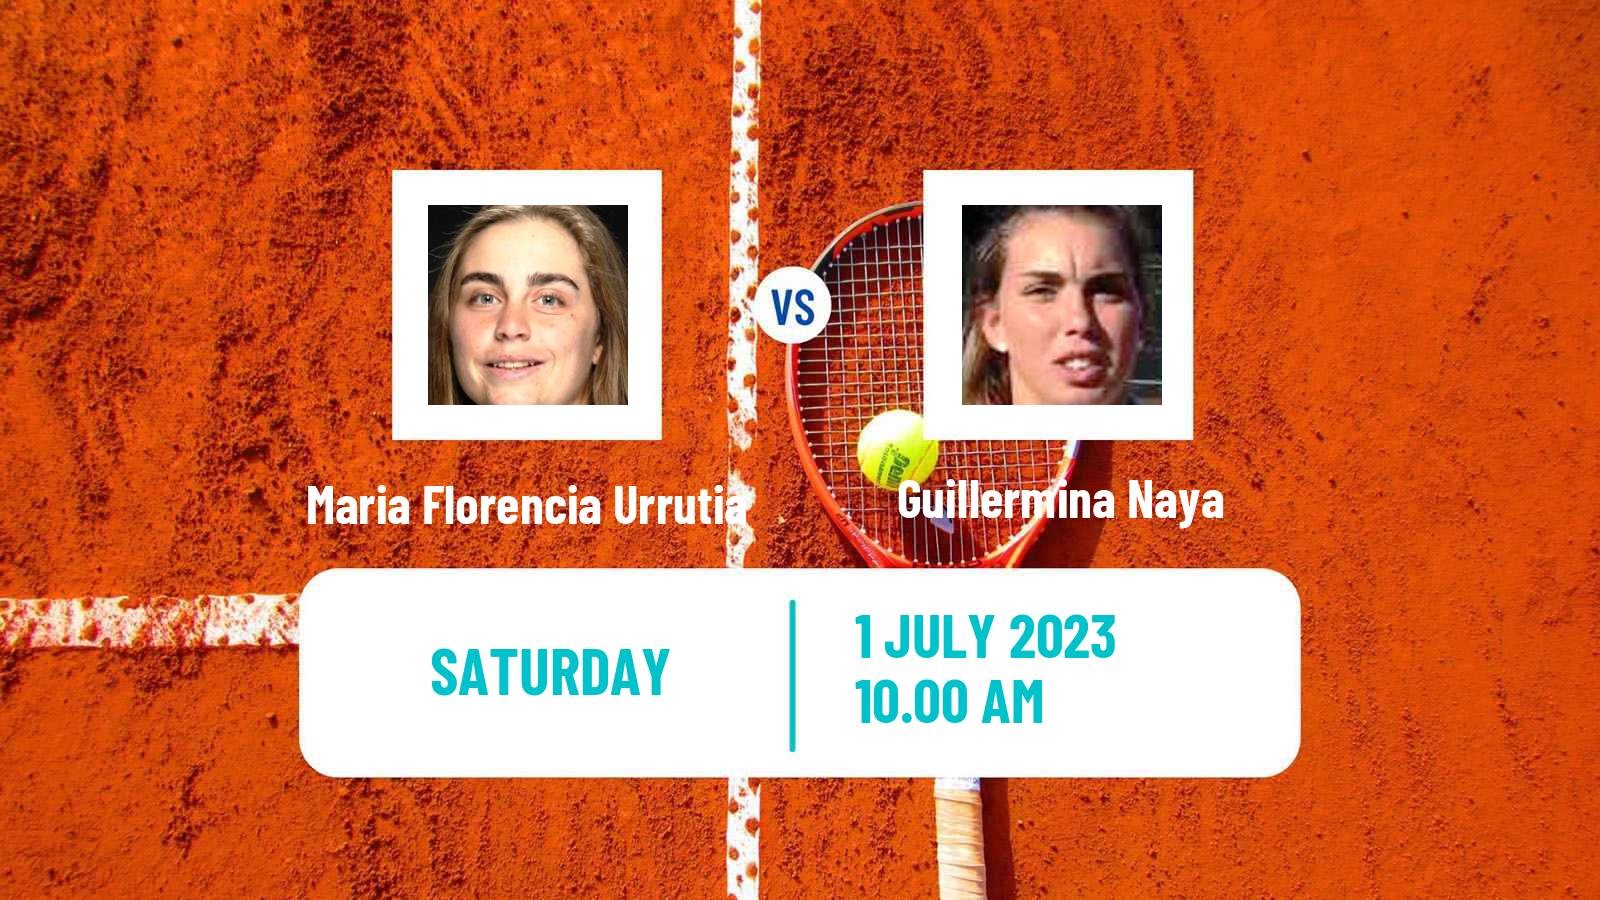 Tennis ITF W15 Rosario Santa Fe Women Maria Florencia Urrutia - Guillermina Naya